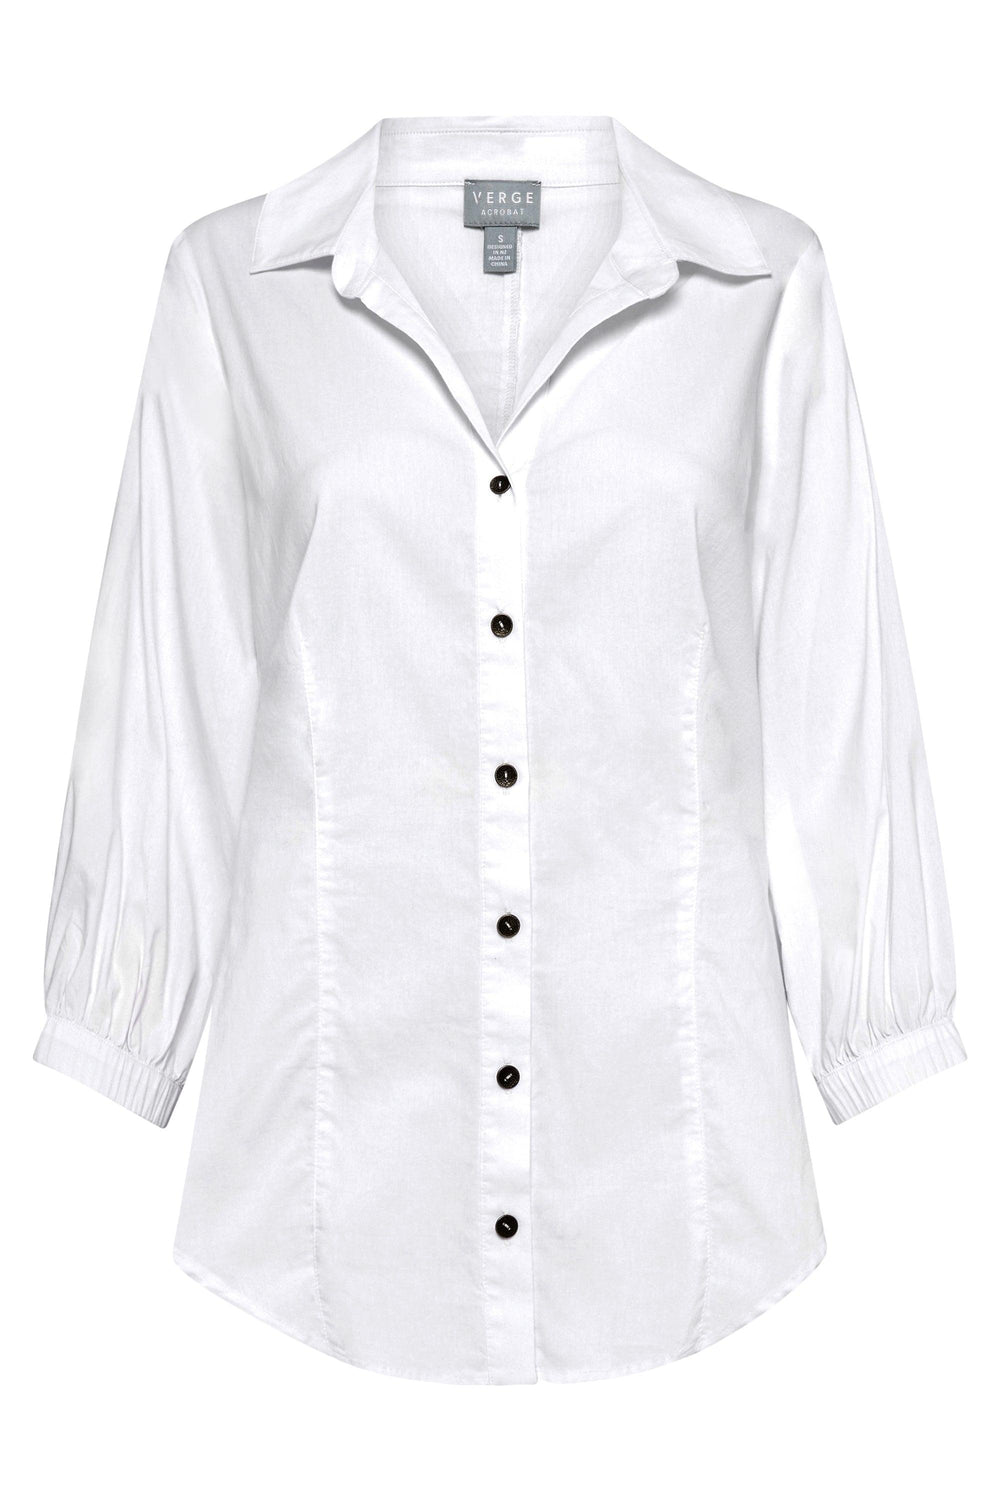 Acrobat Artful Shirt - White - VERGE